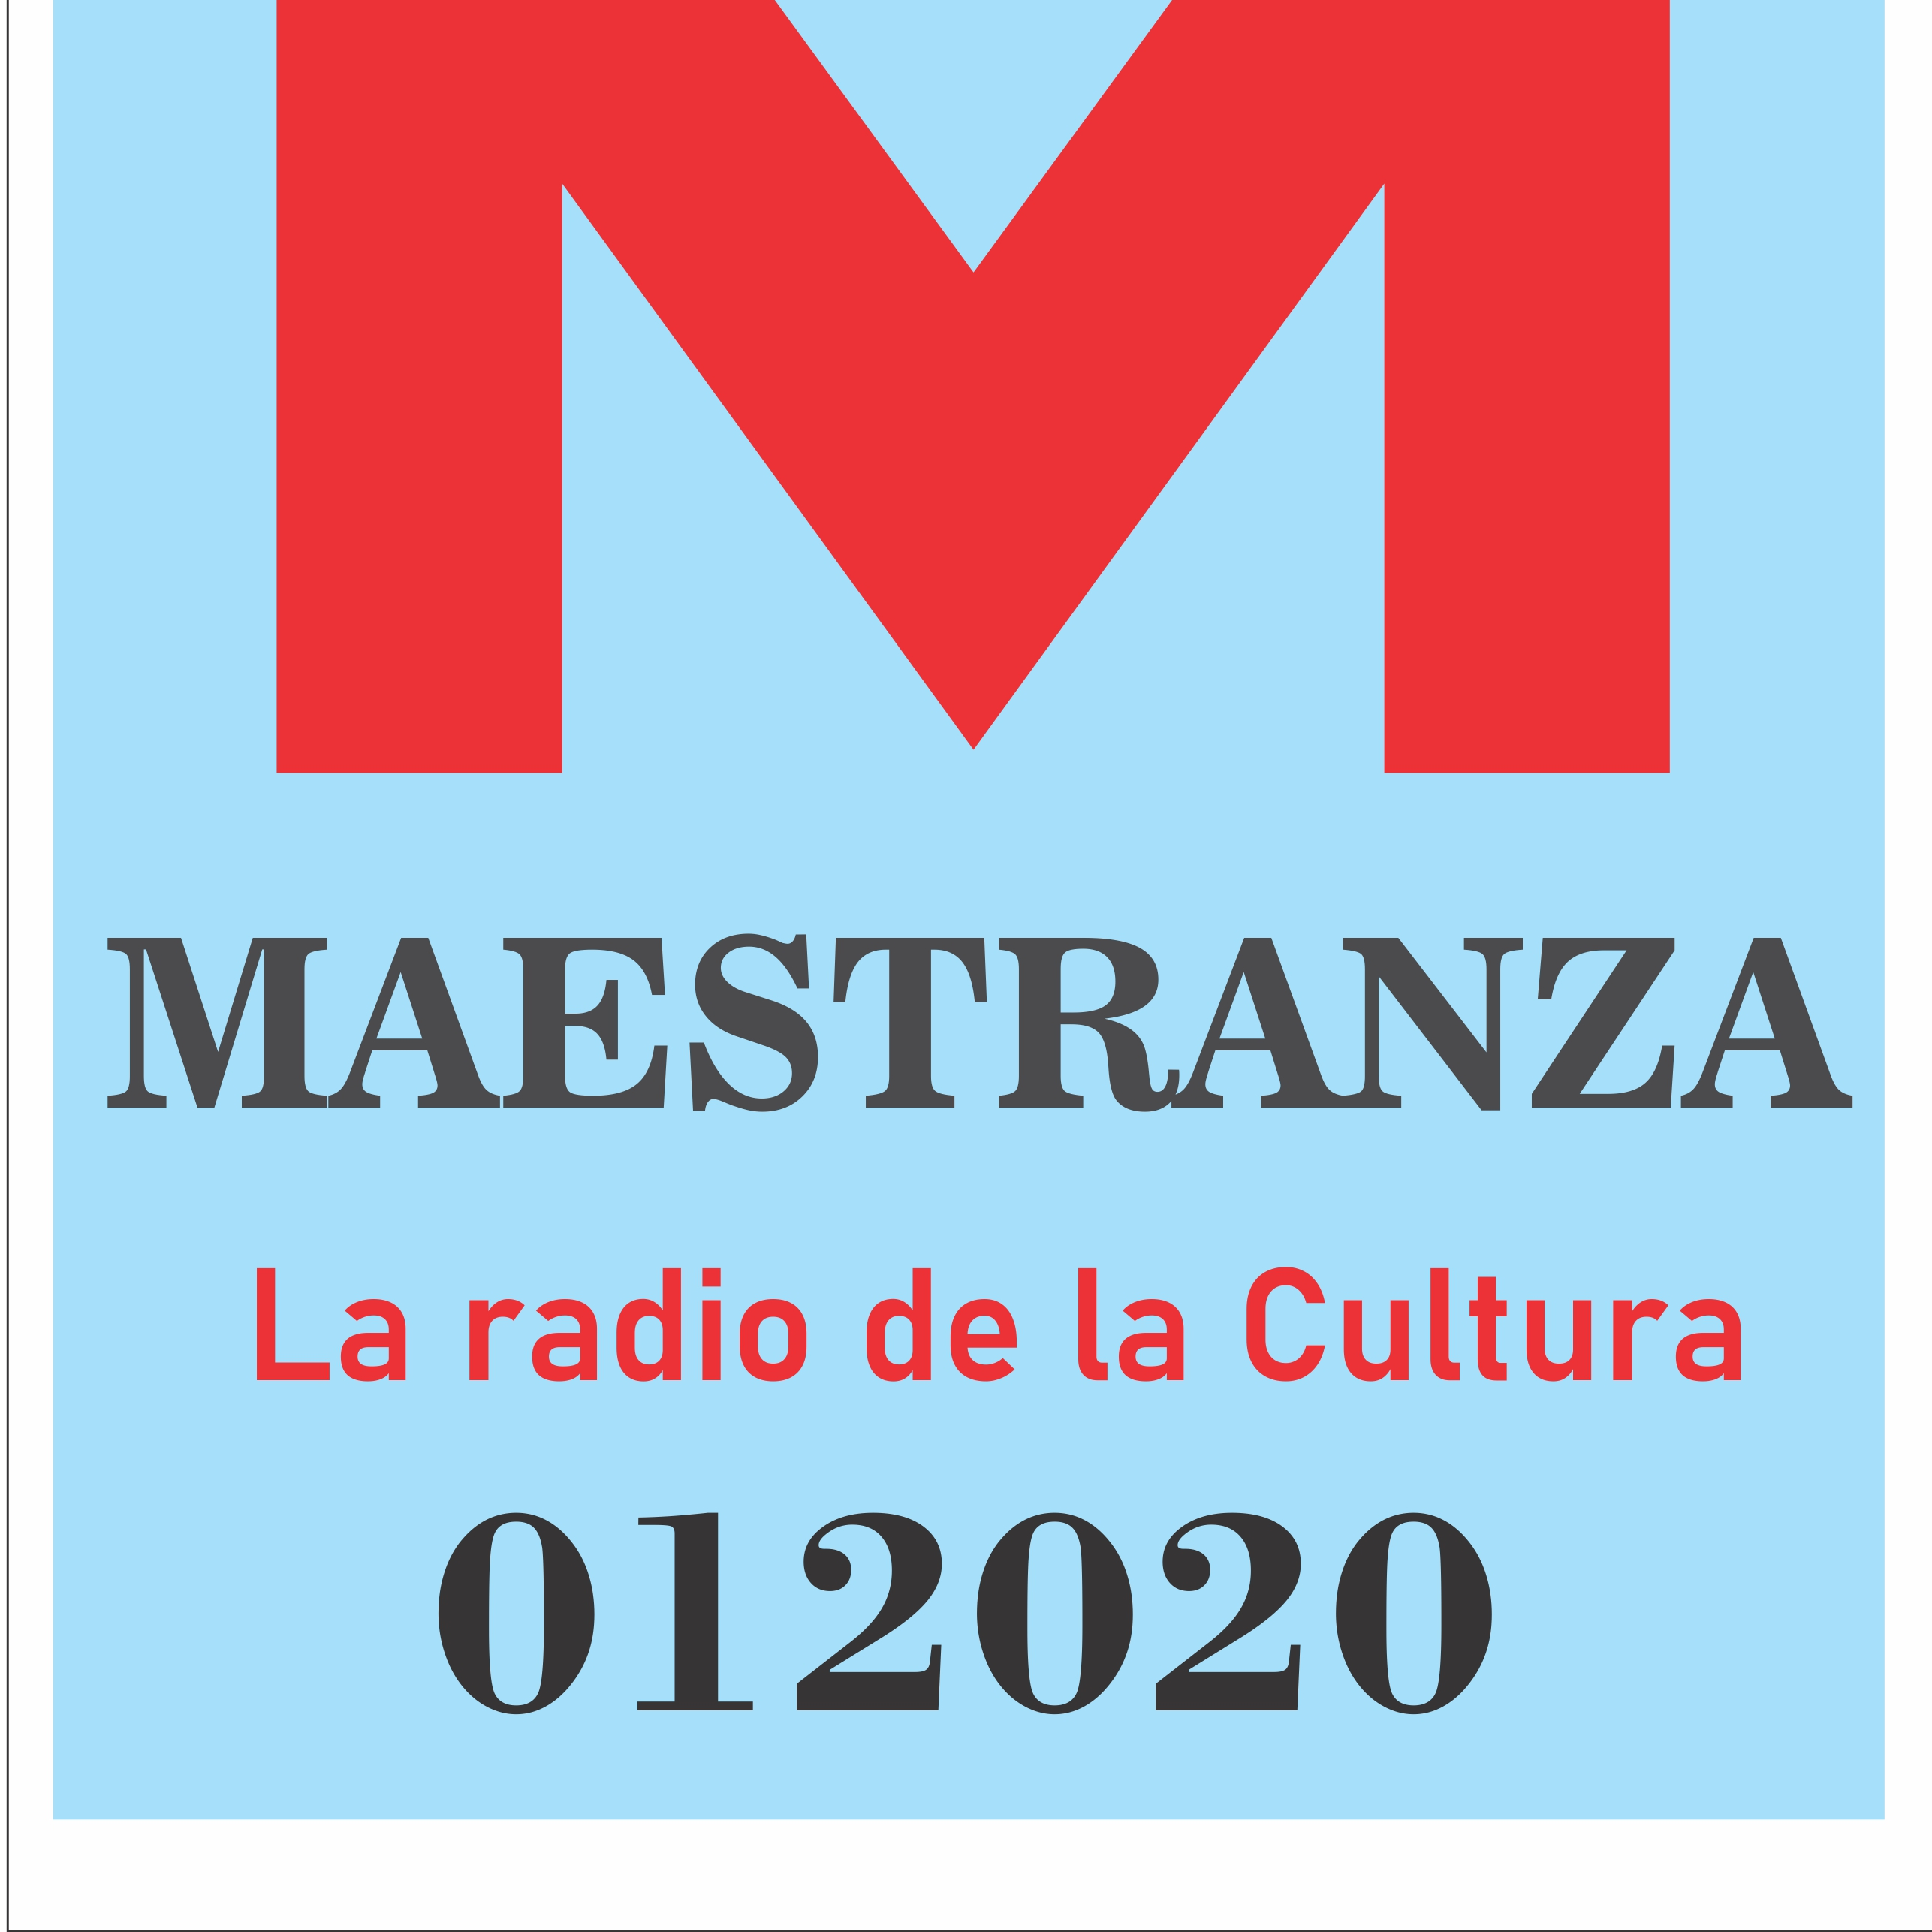 Radio Estación Maestranza